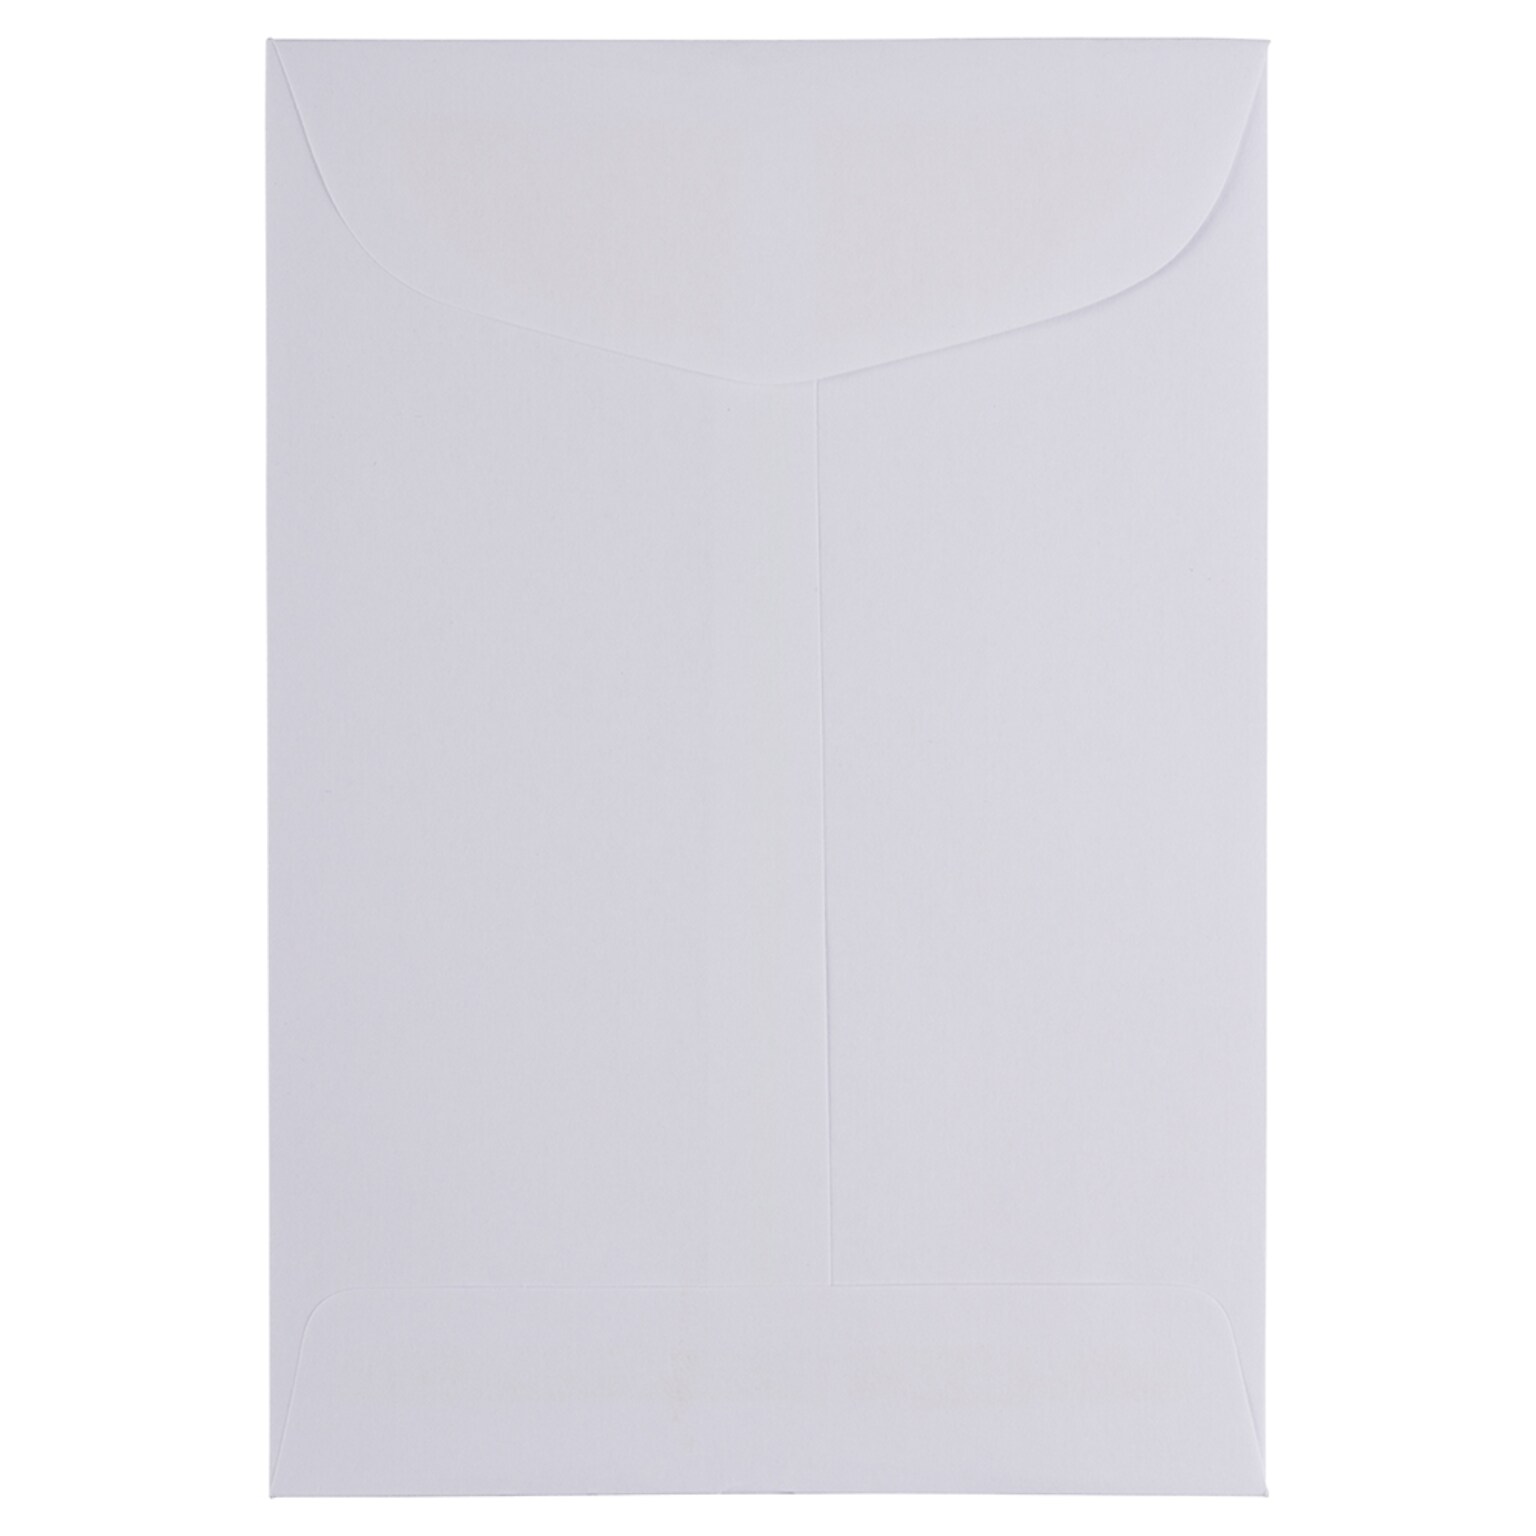 JAM Paper Open End Catalog Envelope, 4 5/8 x 6 3/4, White, 50/Pack (1623988I)